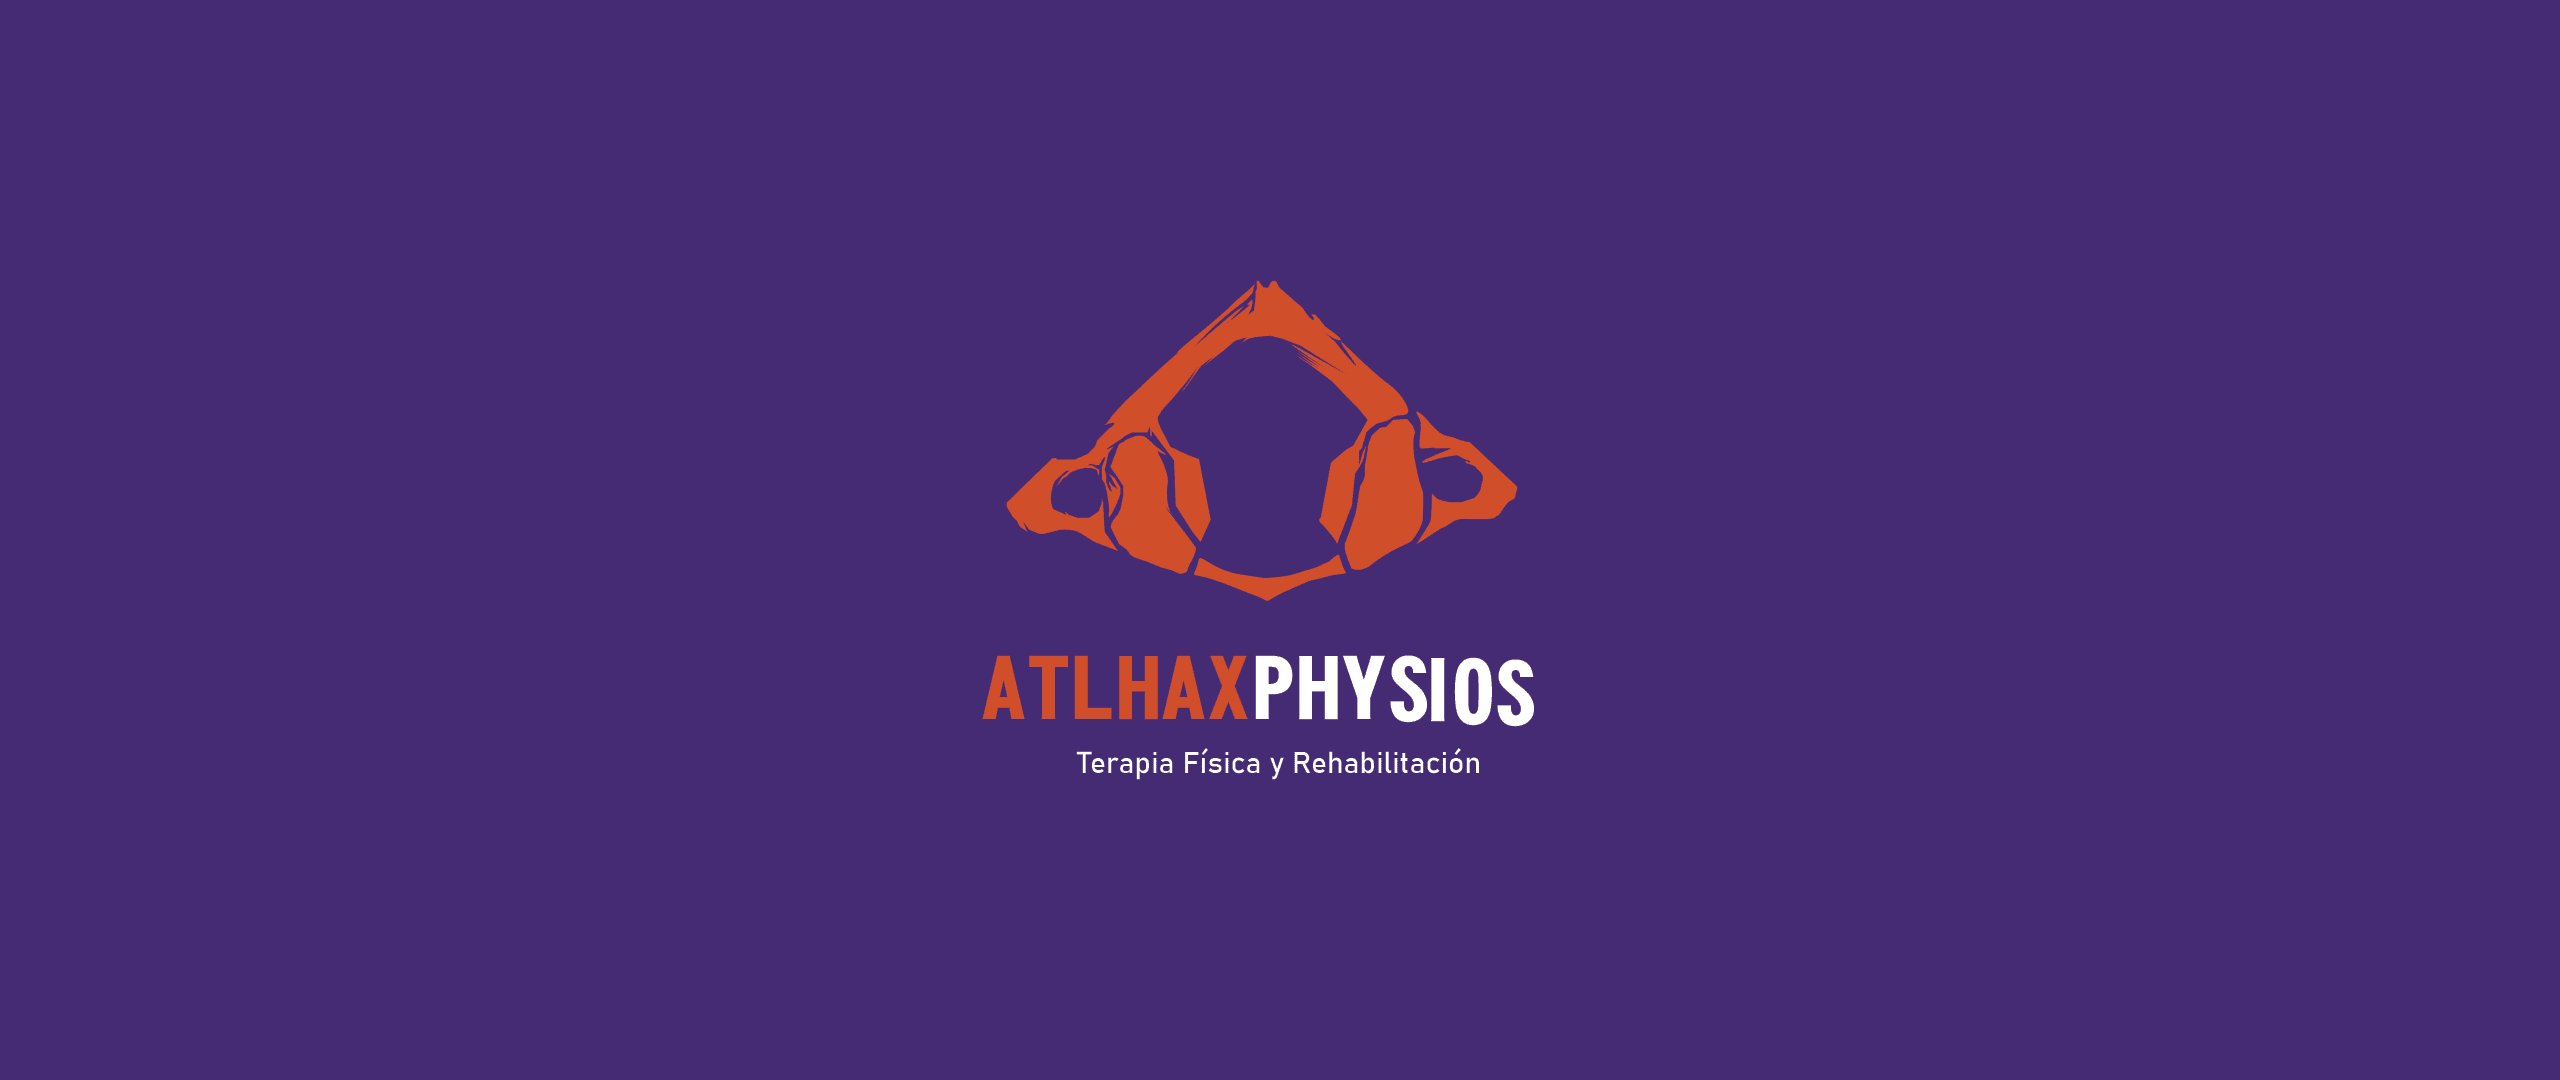 Atlhaxphysios